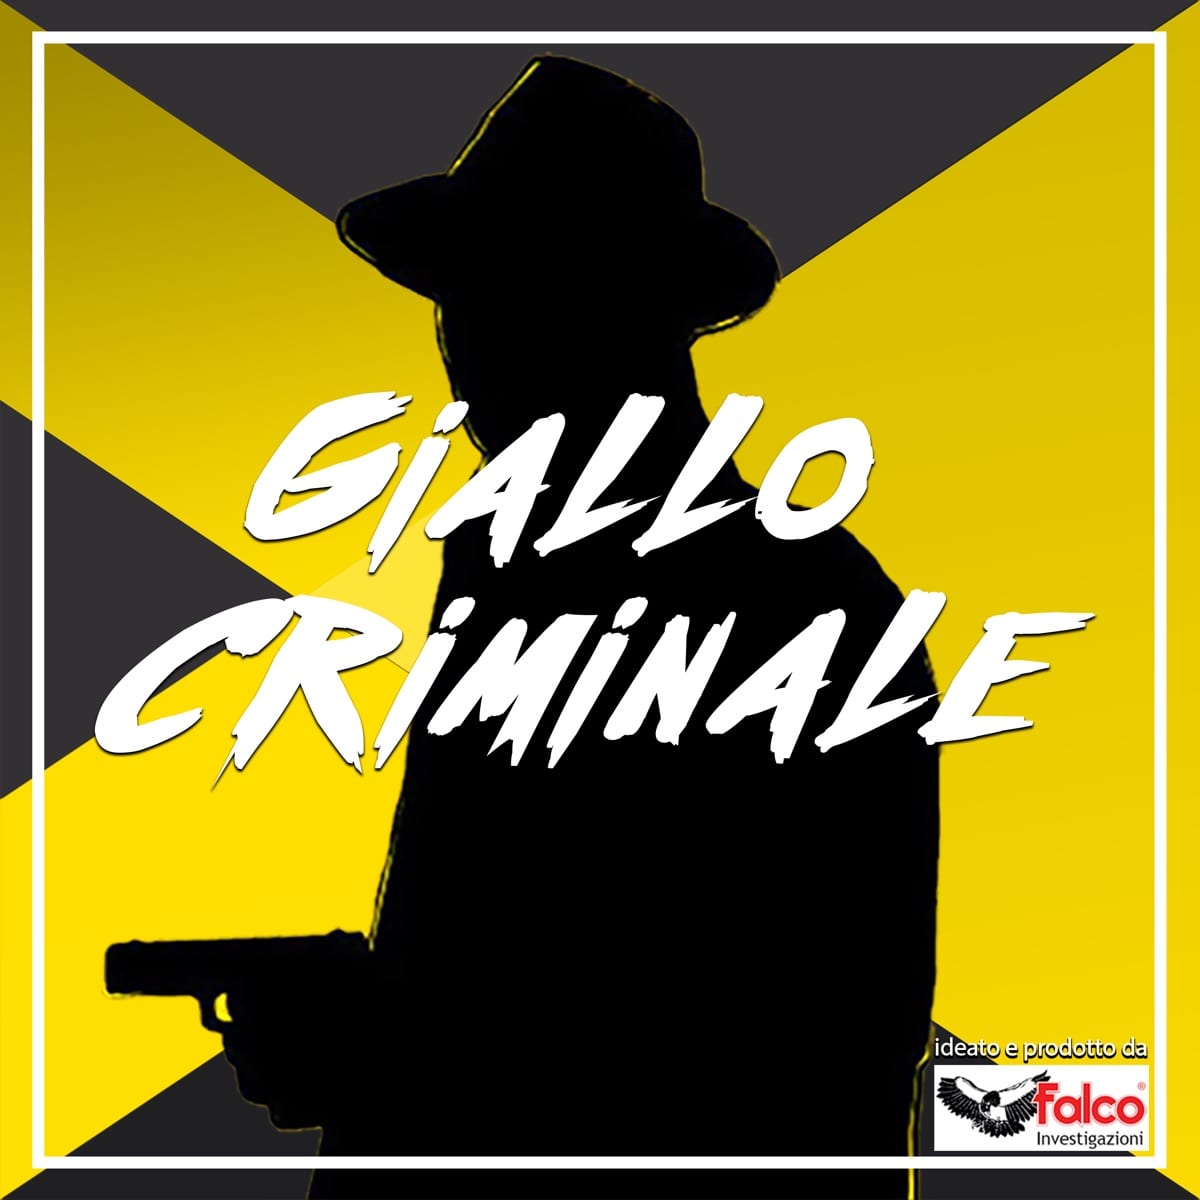 Il podcast Giallo Criminale 